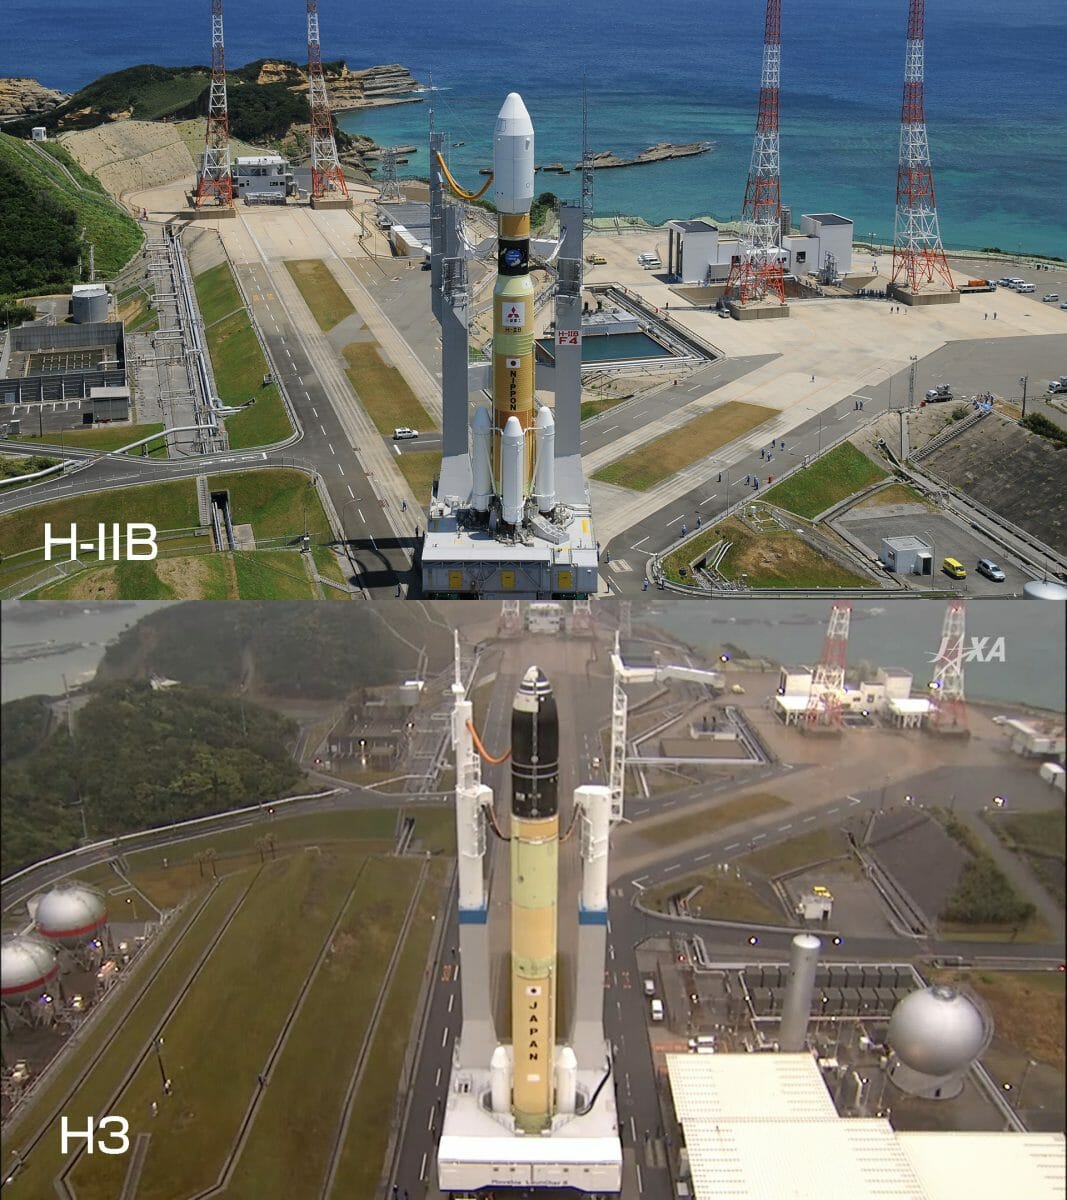 H-IIBとH3を正面上から撮影した画像。発射台下部の穴の大きさと機体のめり込みの違いが分かる。（Credit: JAXA、機種名の文字は金木が追加）